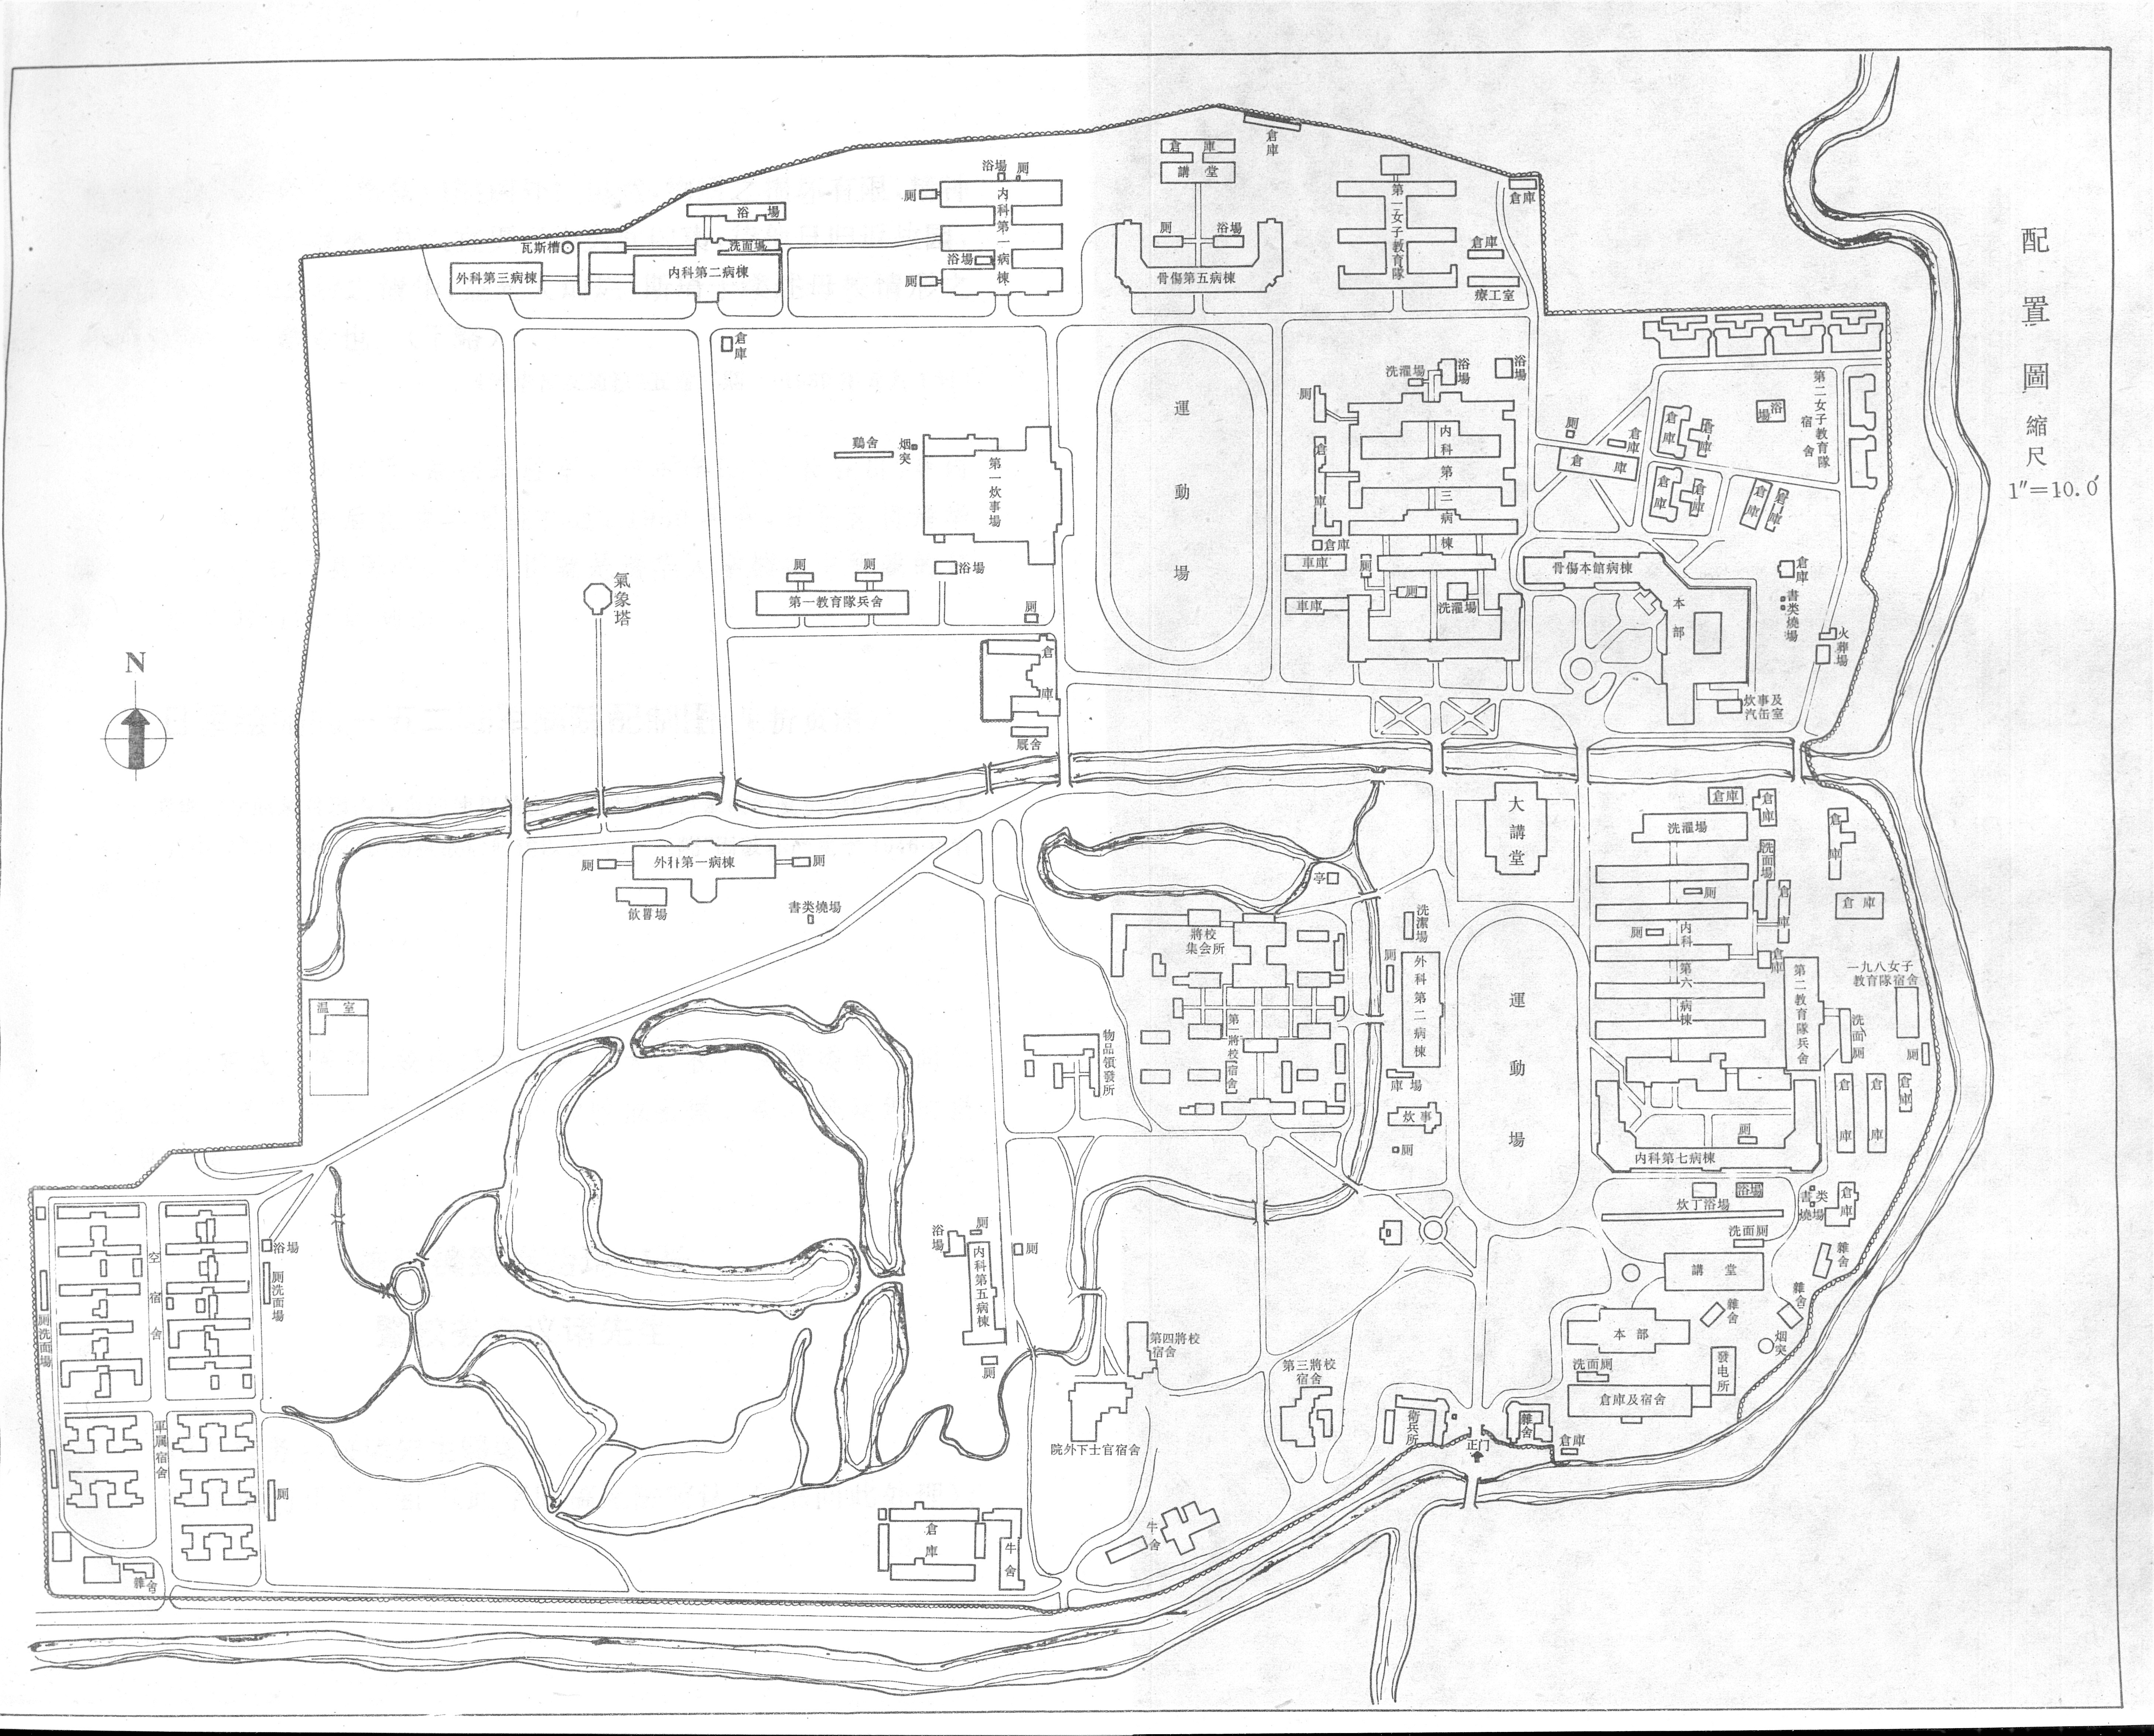 19370101-日军绘制清华校园地图-刘沫扫描-清华地图.jpg